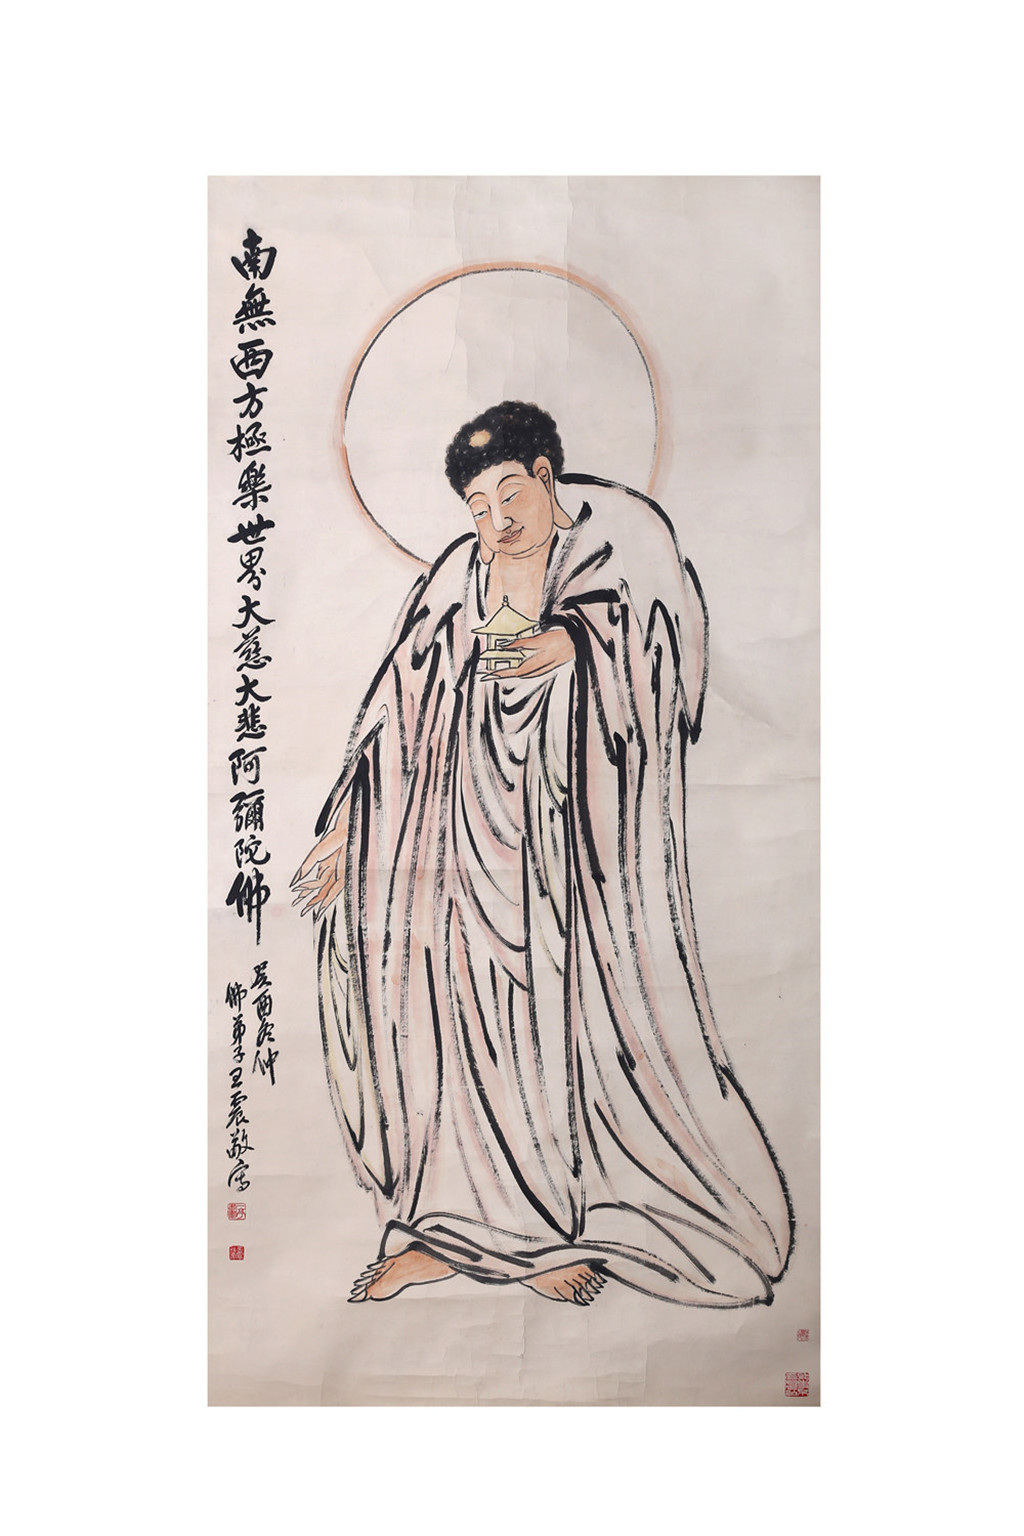 王一亭（1867-1938）南无阿弥陀佛像